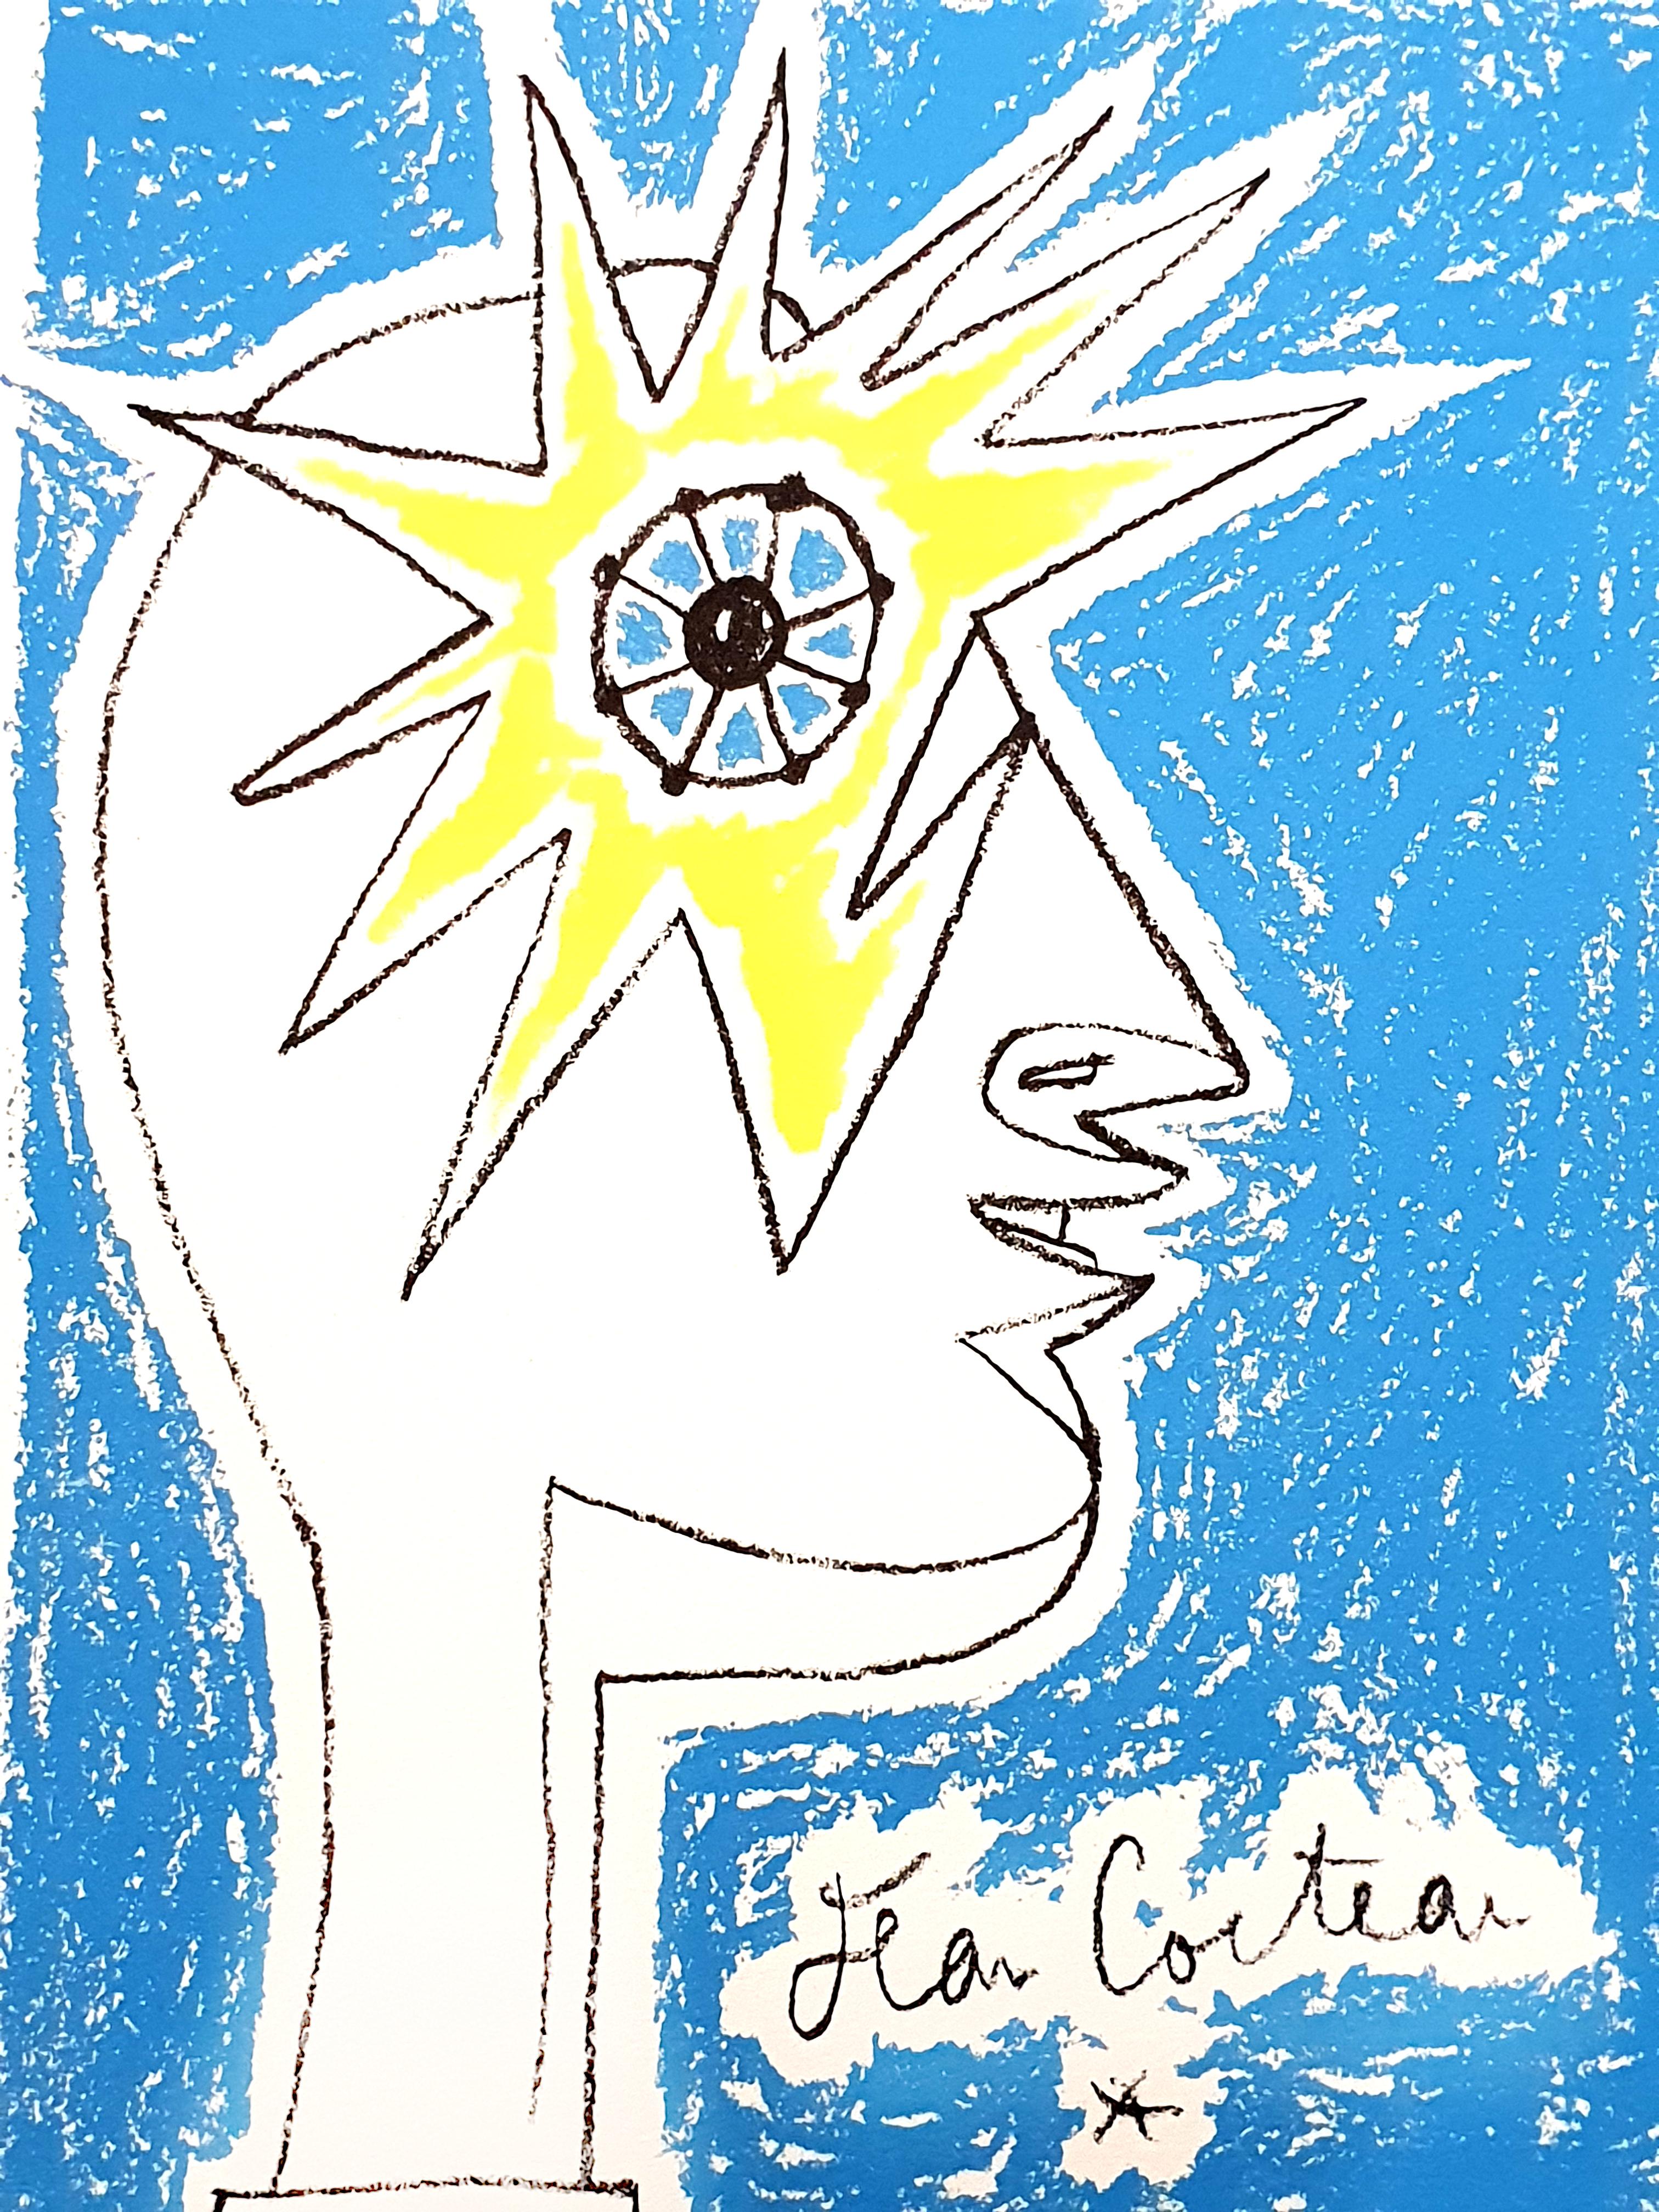 Lithographie originale de Jean Cocteau
Titre : Profil
Signé 
Dimensions : 60 x 44 cm